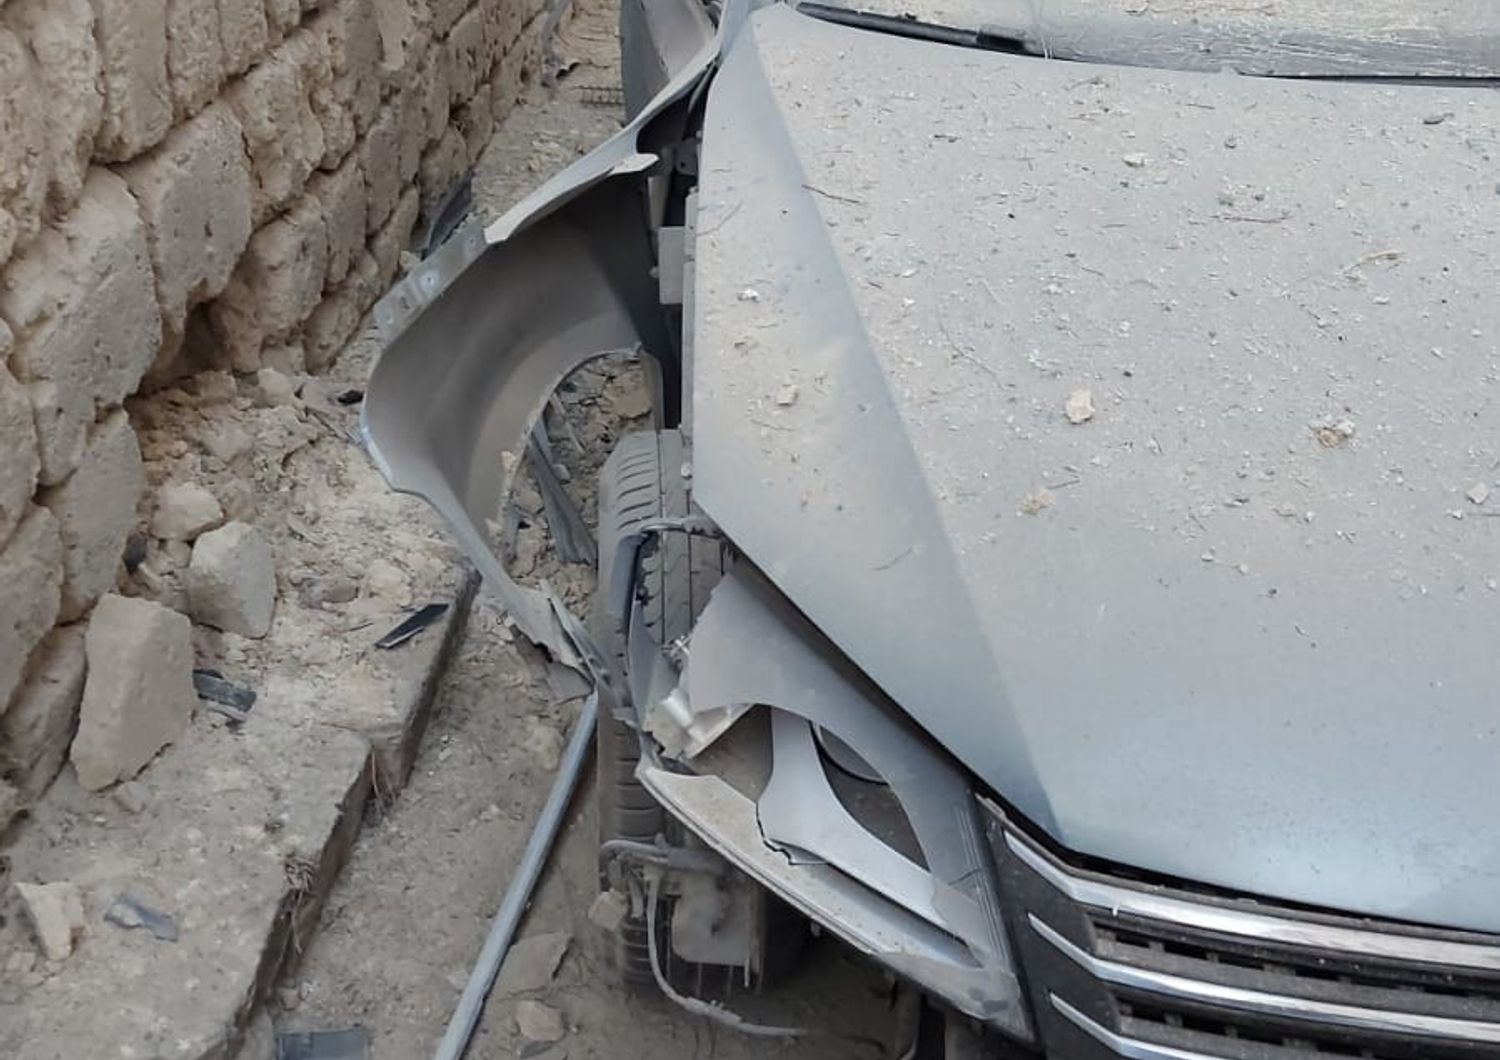 &nbsp;L'auto dell'agente in servizio nel commissariato di Canosa di Puglia devastata dall'esplosione